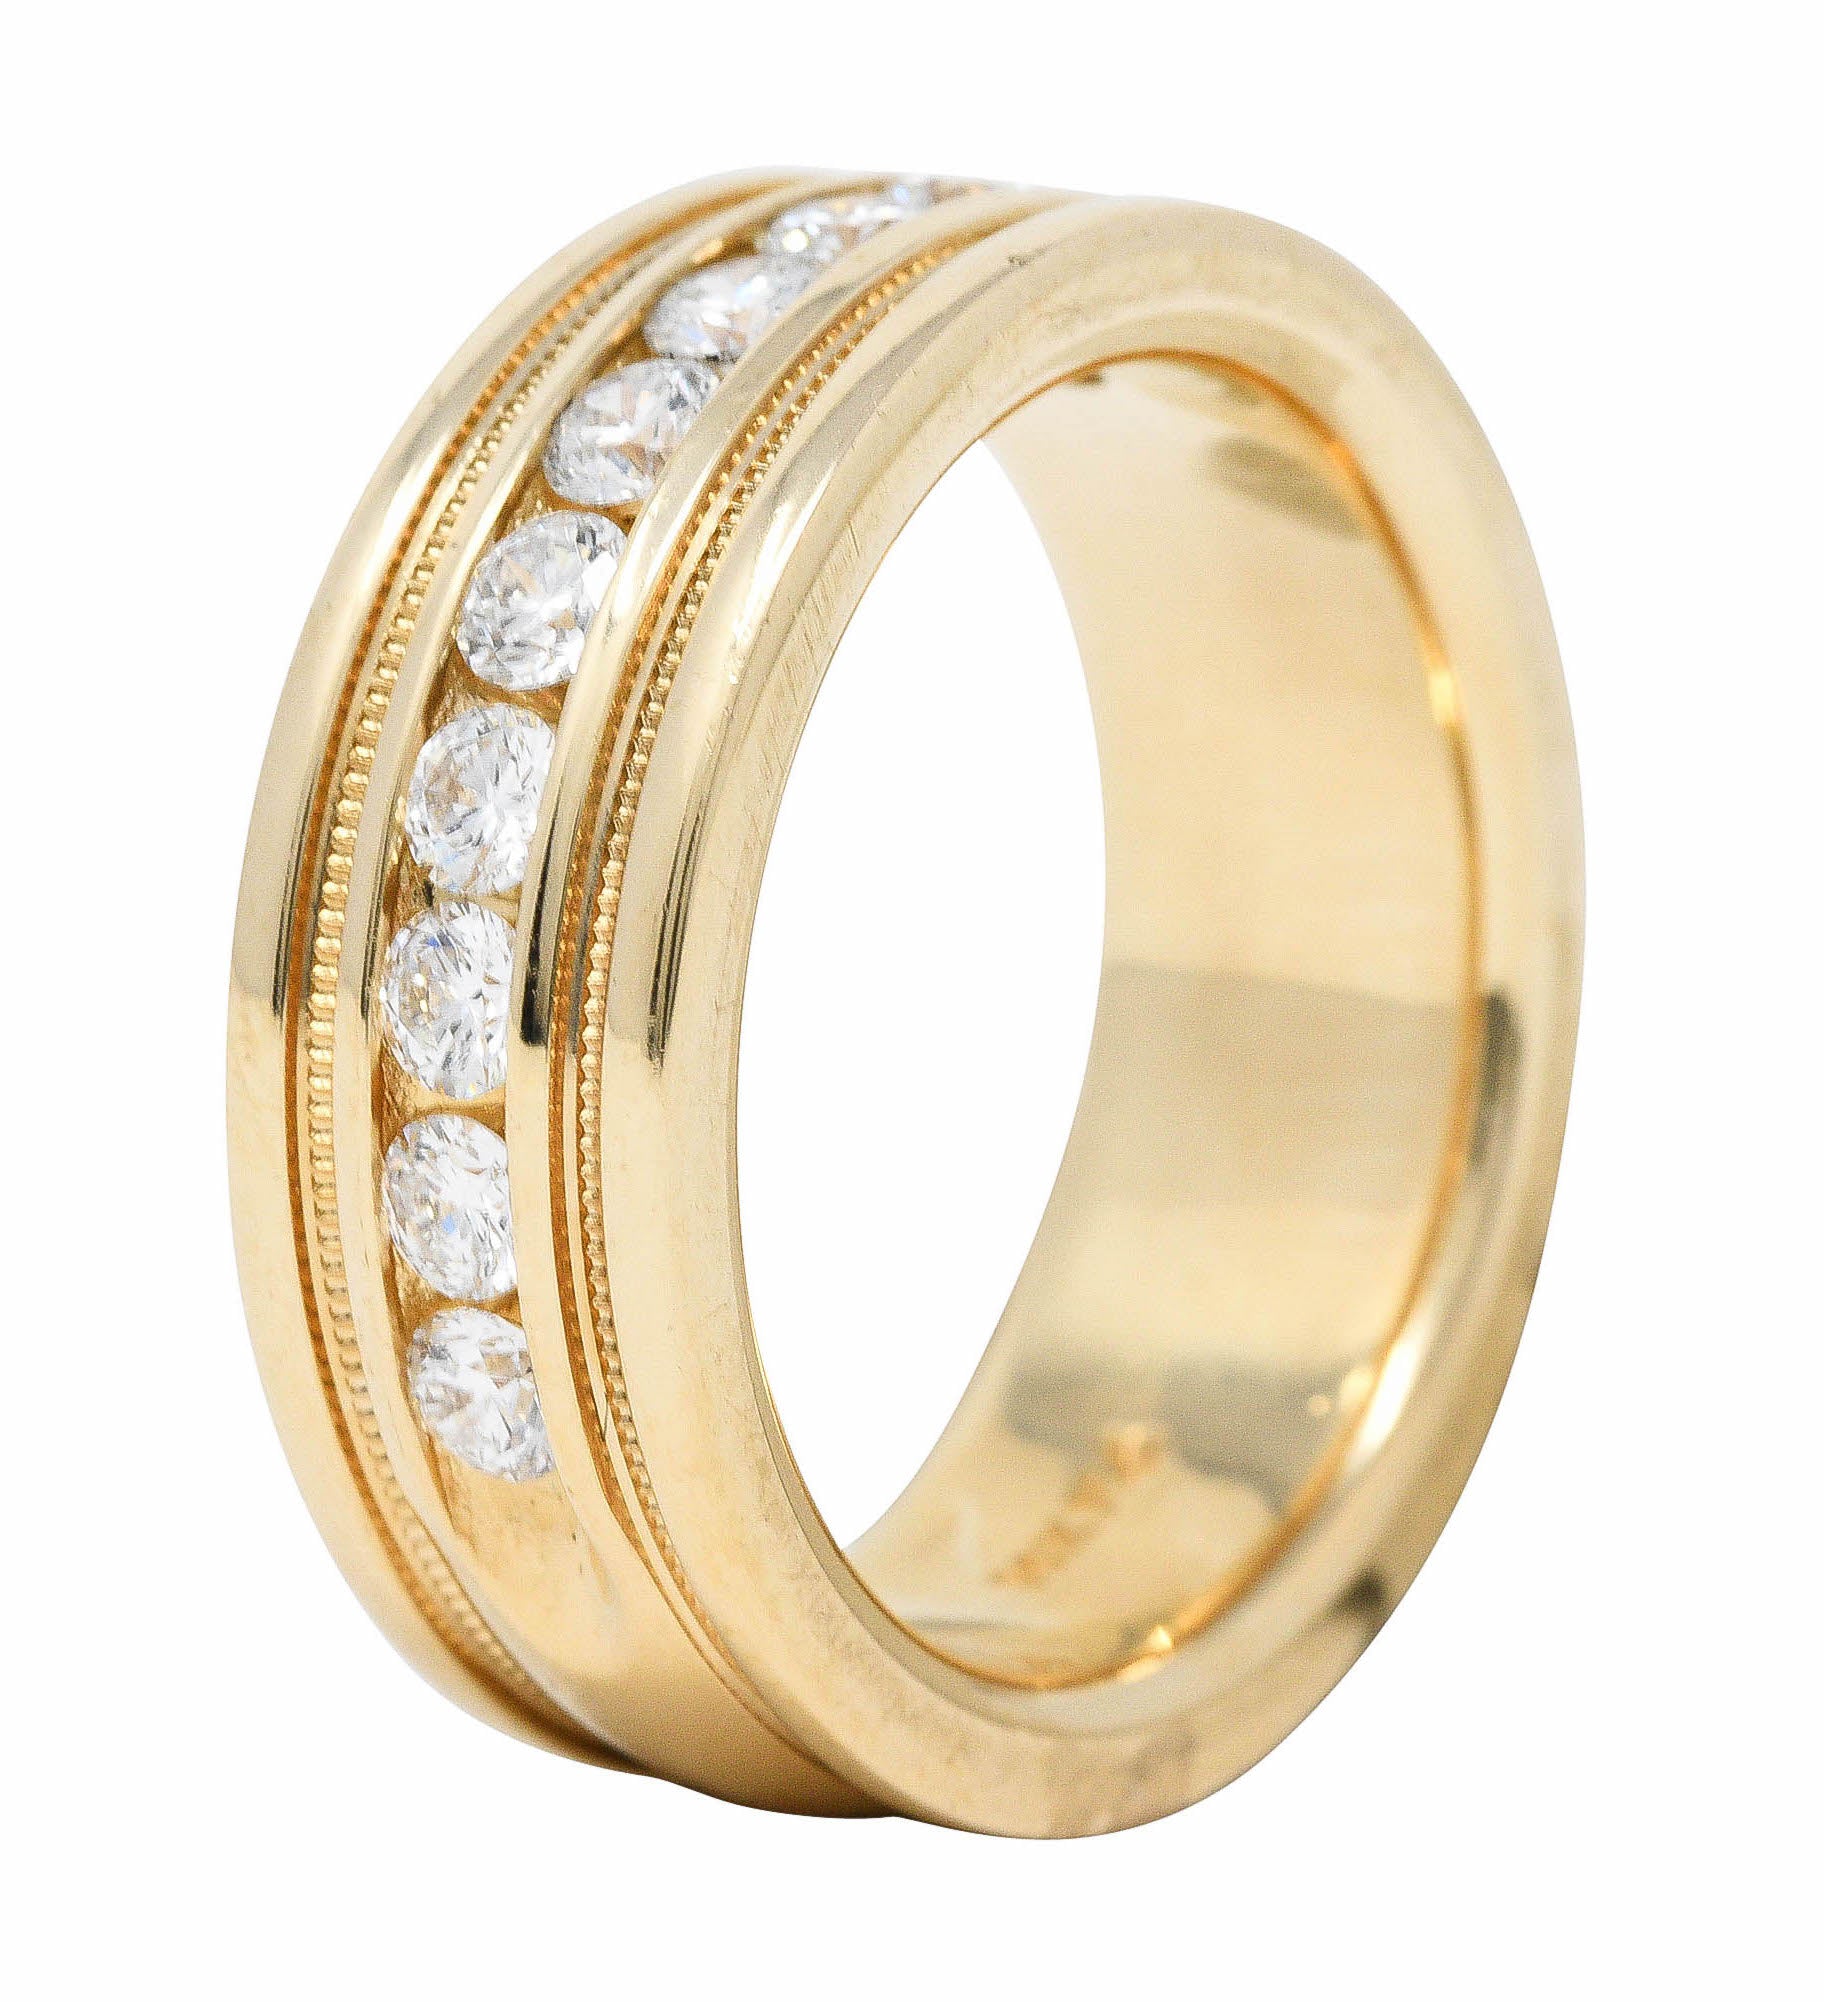 Vintage 1.25 CTW Diamond 14 Karat Gold Men's Wedding Band Ring